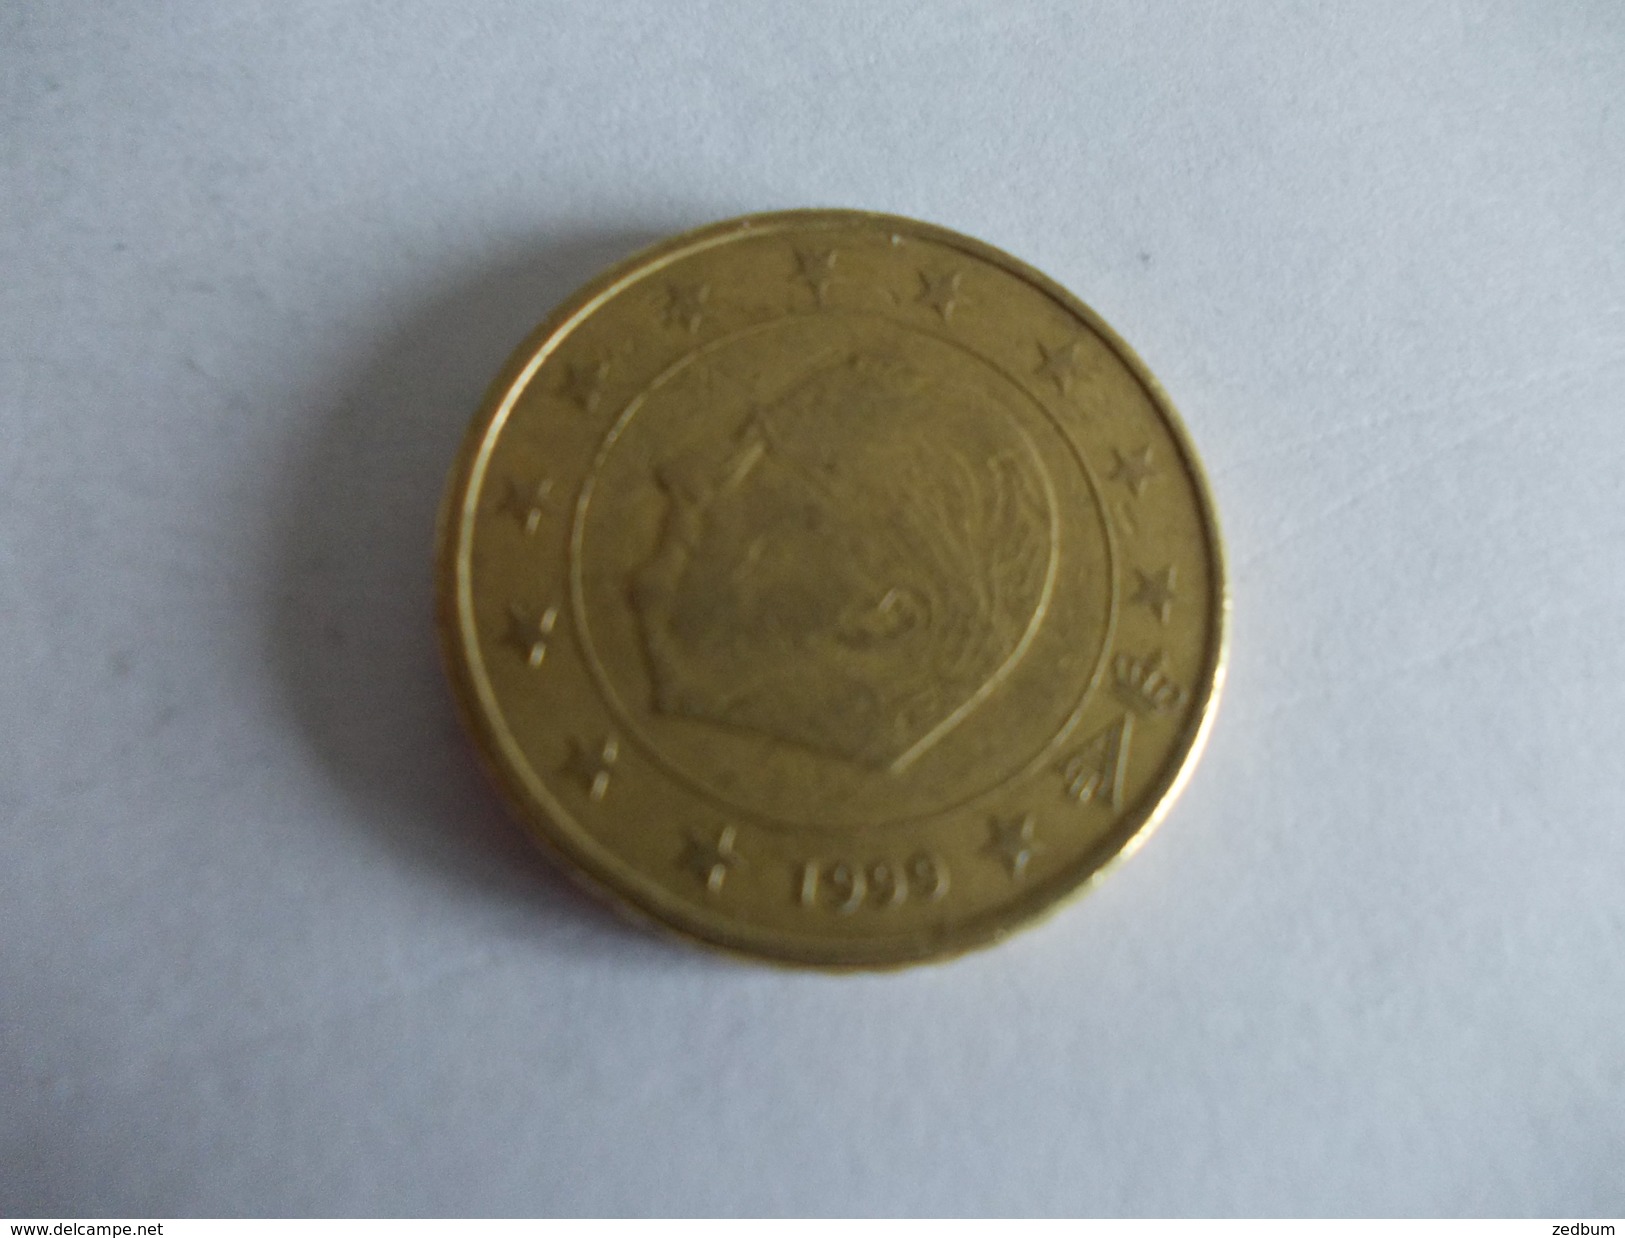 Monnaie Pièce De 50 Centimes D' Euro De Belgique Année 1999 Valeur Argus 1 &euro; - Belgium